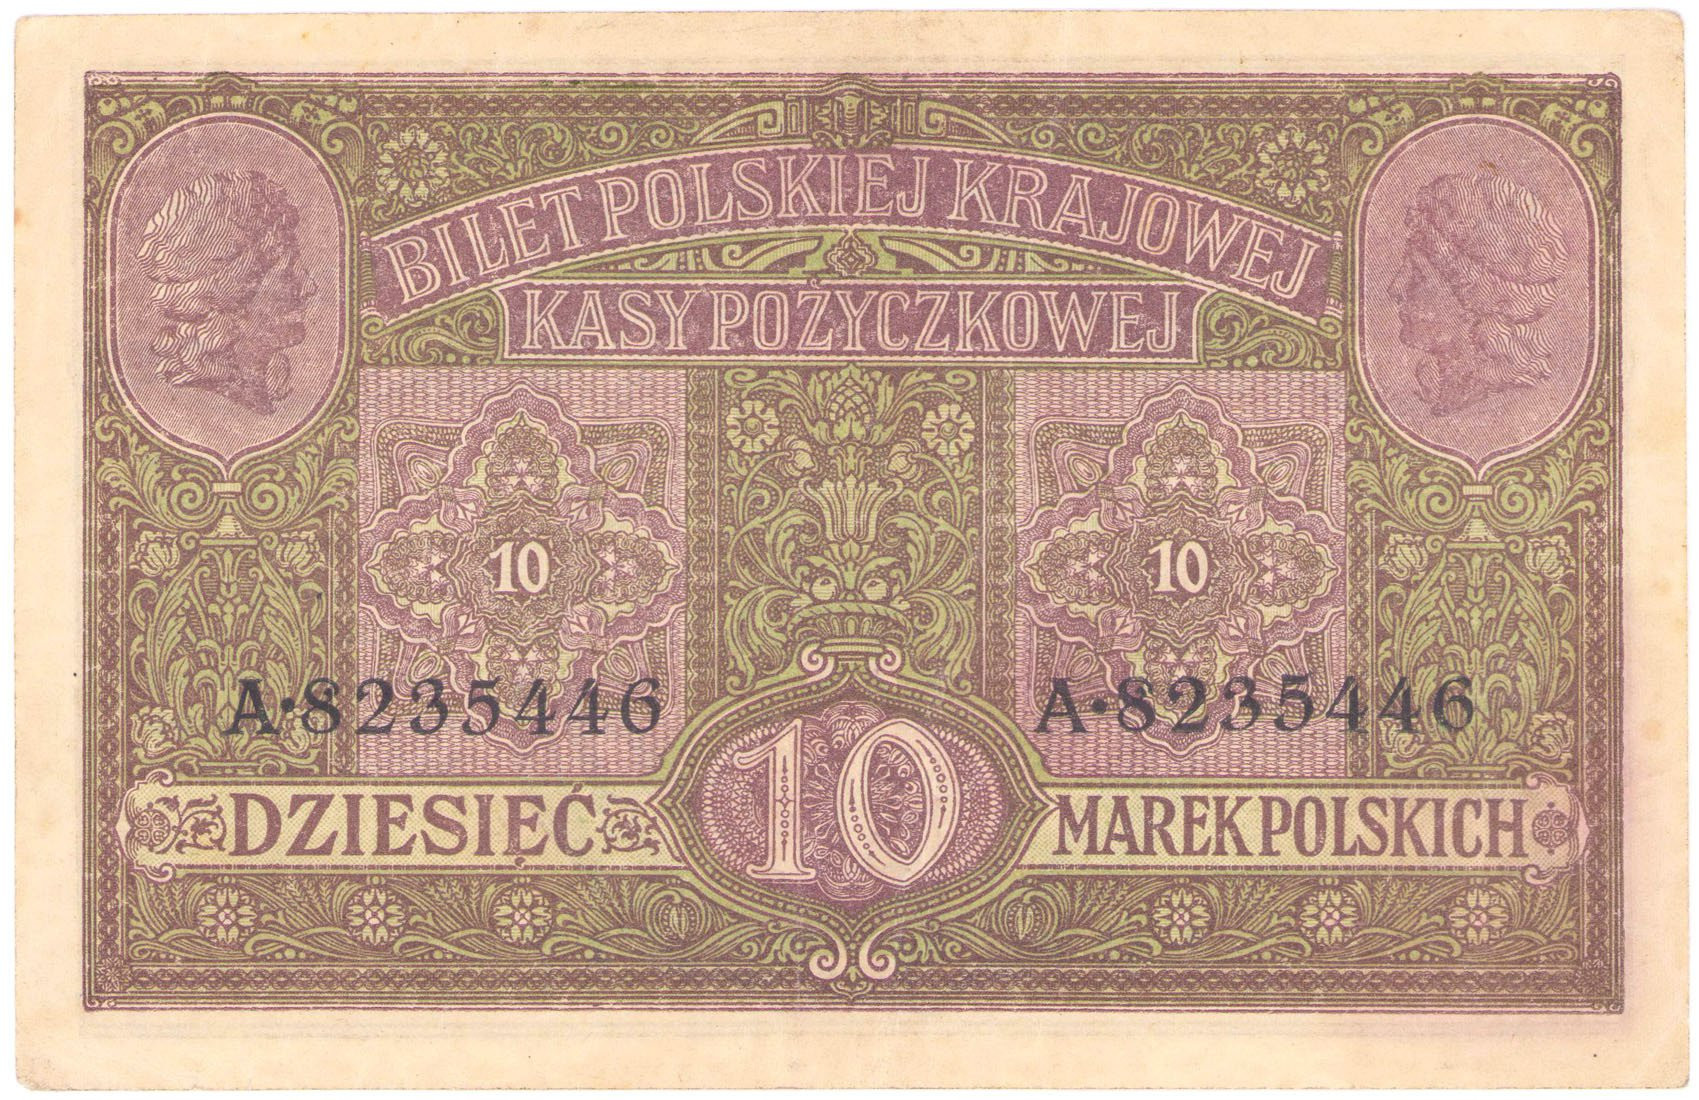 10 marek polskich 1916 seria A - Generał, biletów – RZADKI